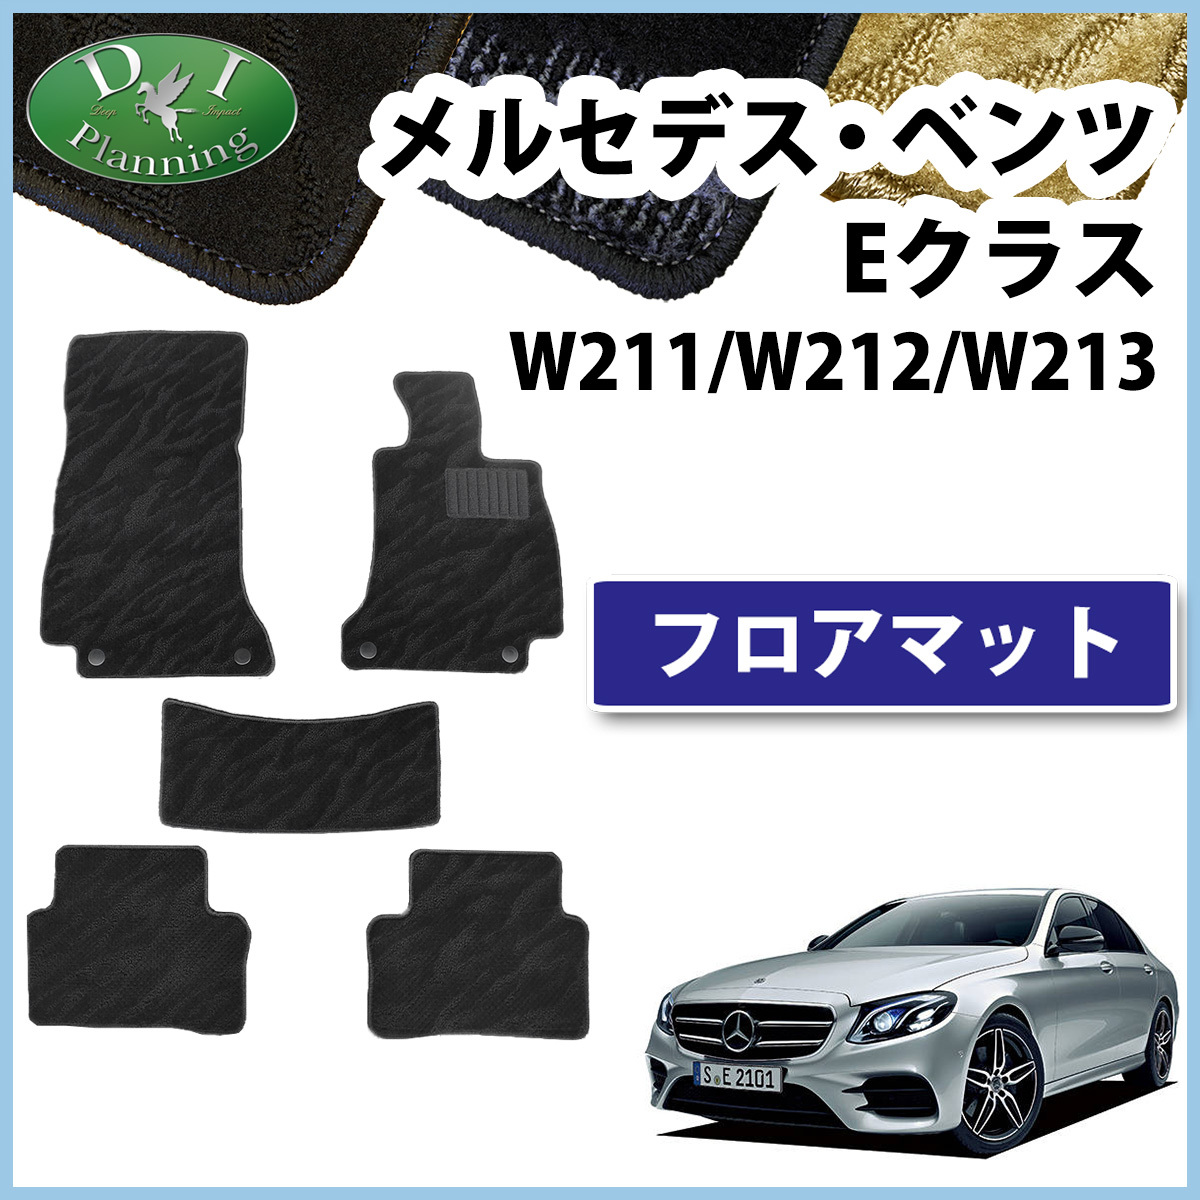  Mercedes * Benz E Class W211 W212 W213 weave pattern floor mat car mat automobile mat after market new goods 